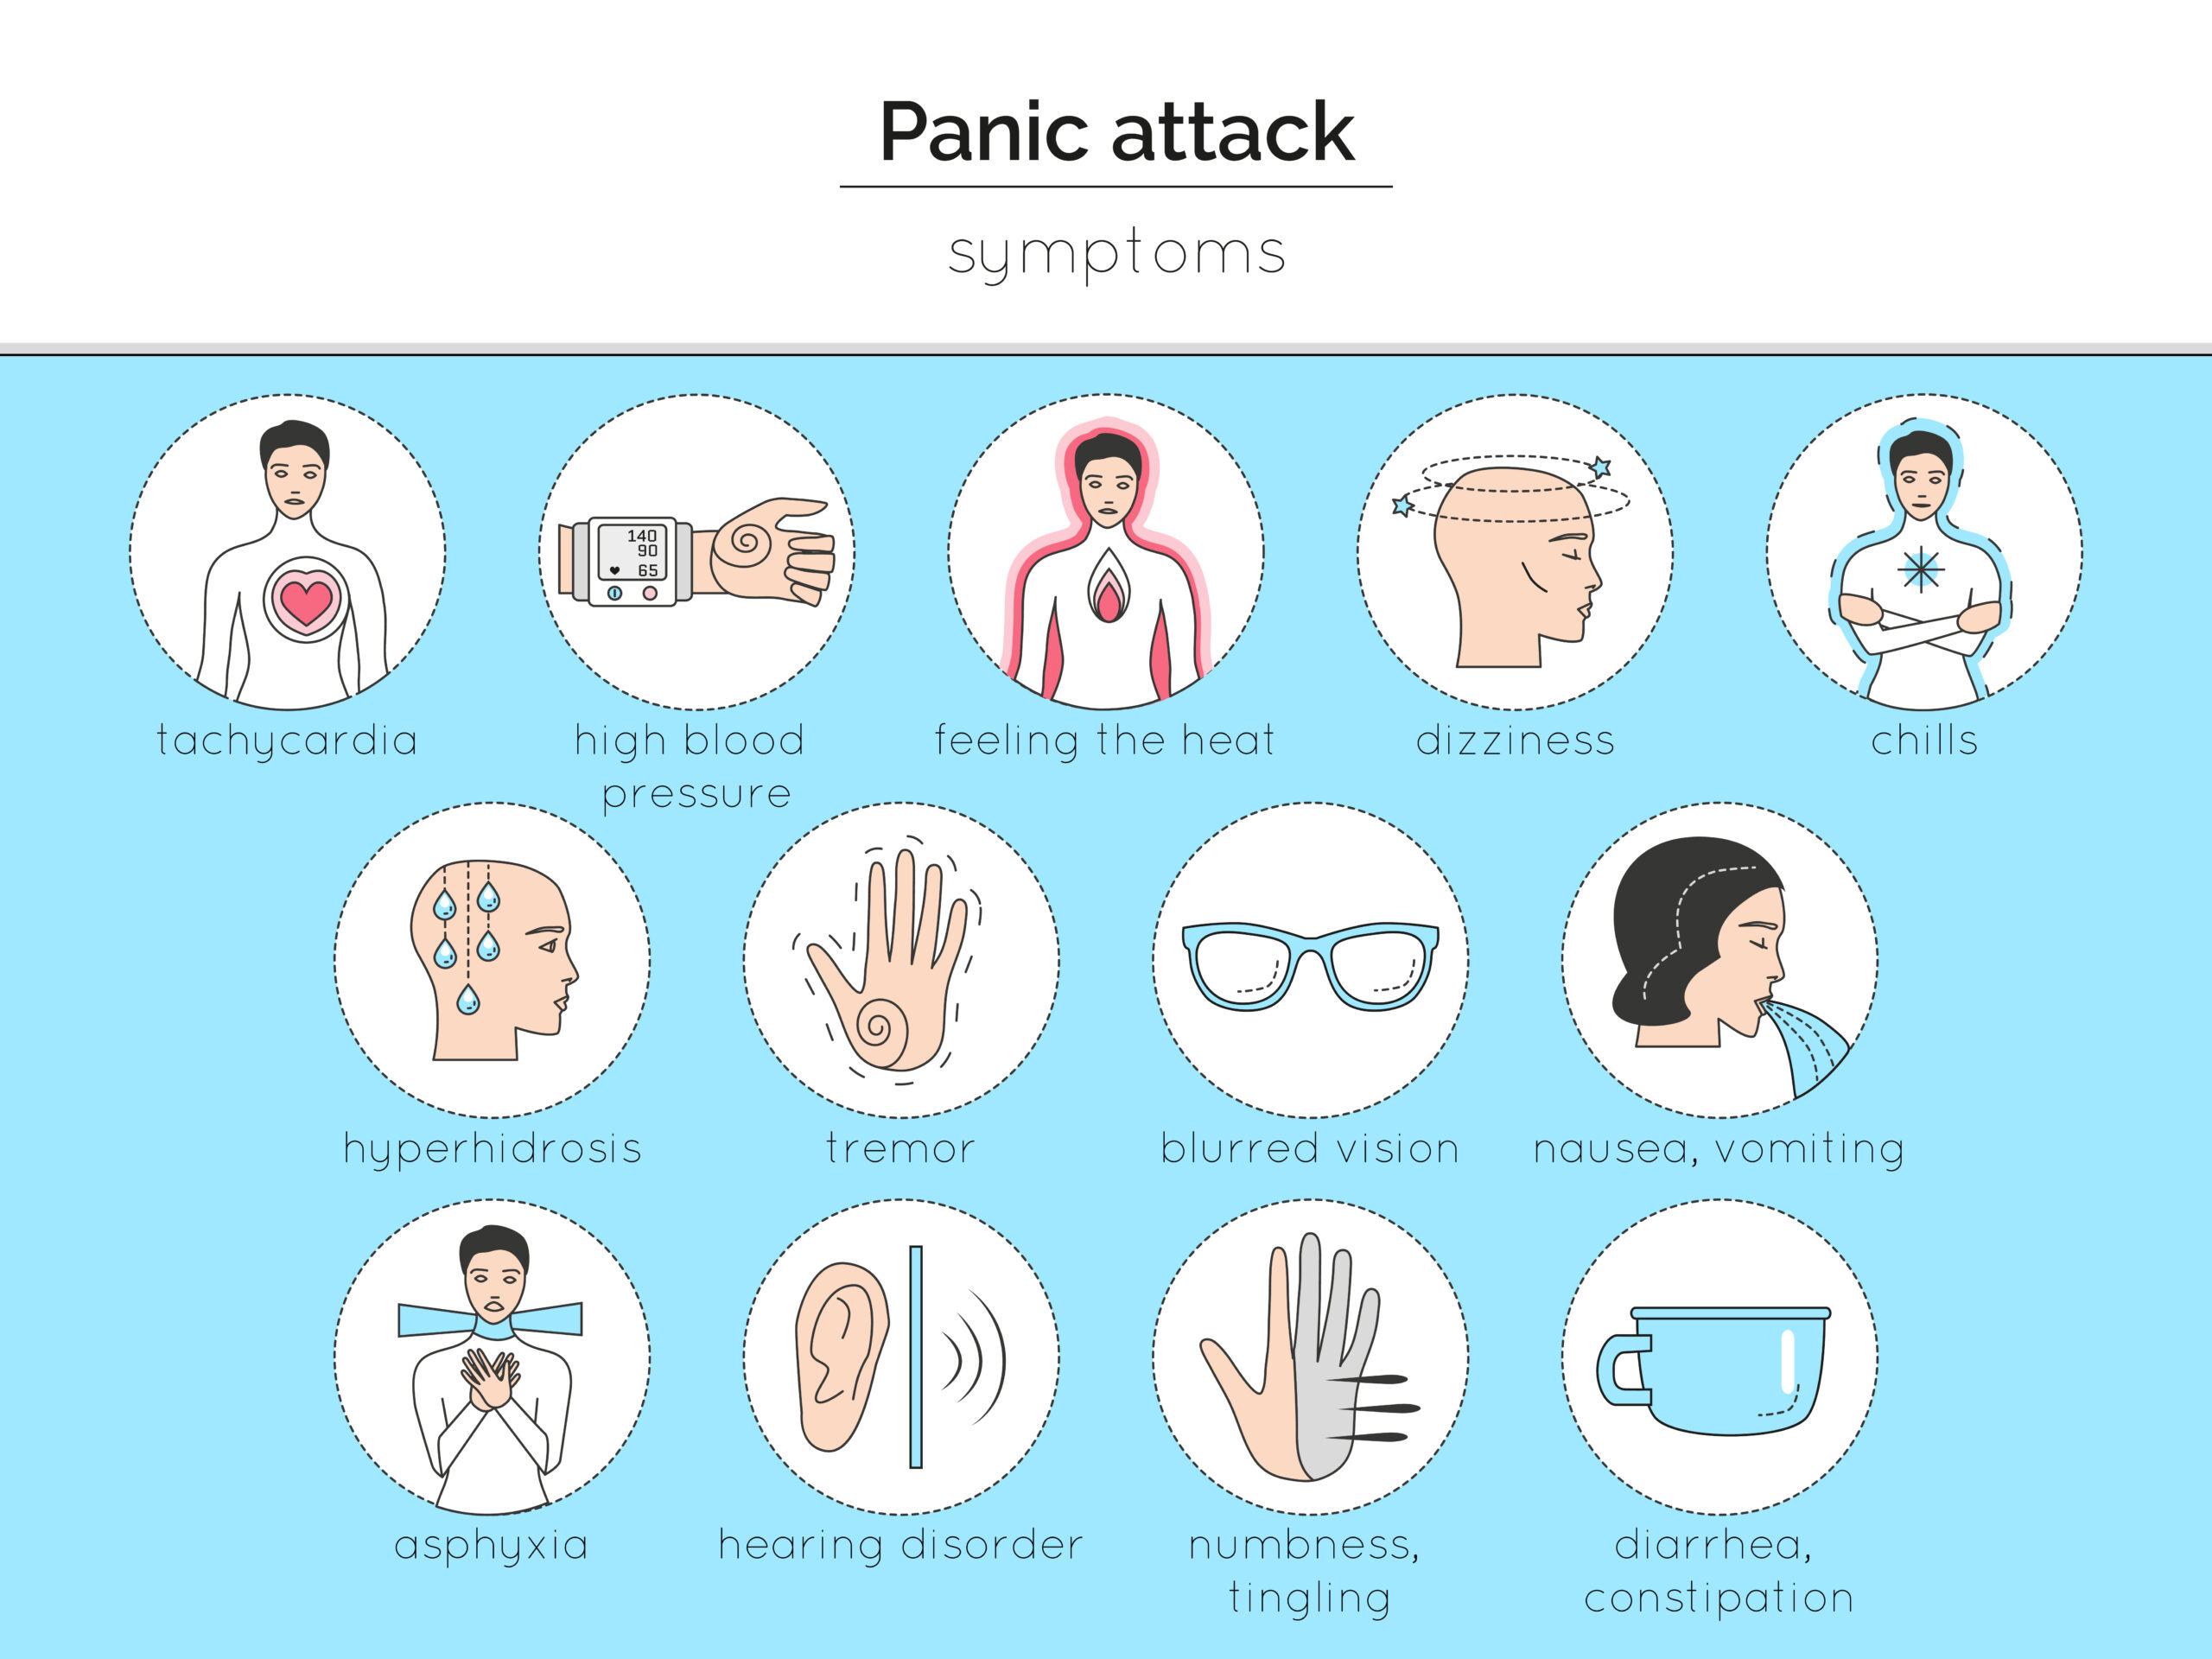 Panic Attack Symptoms in Veterans